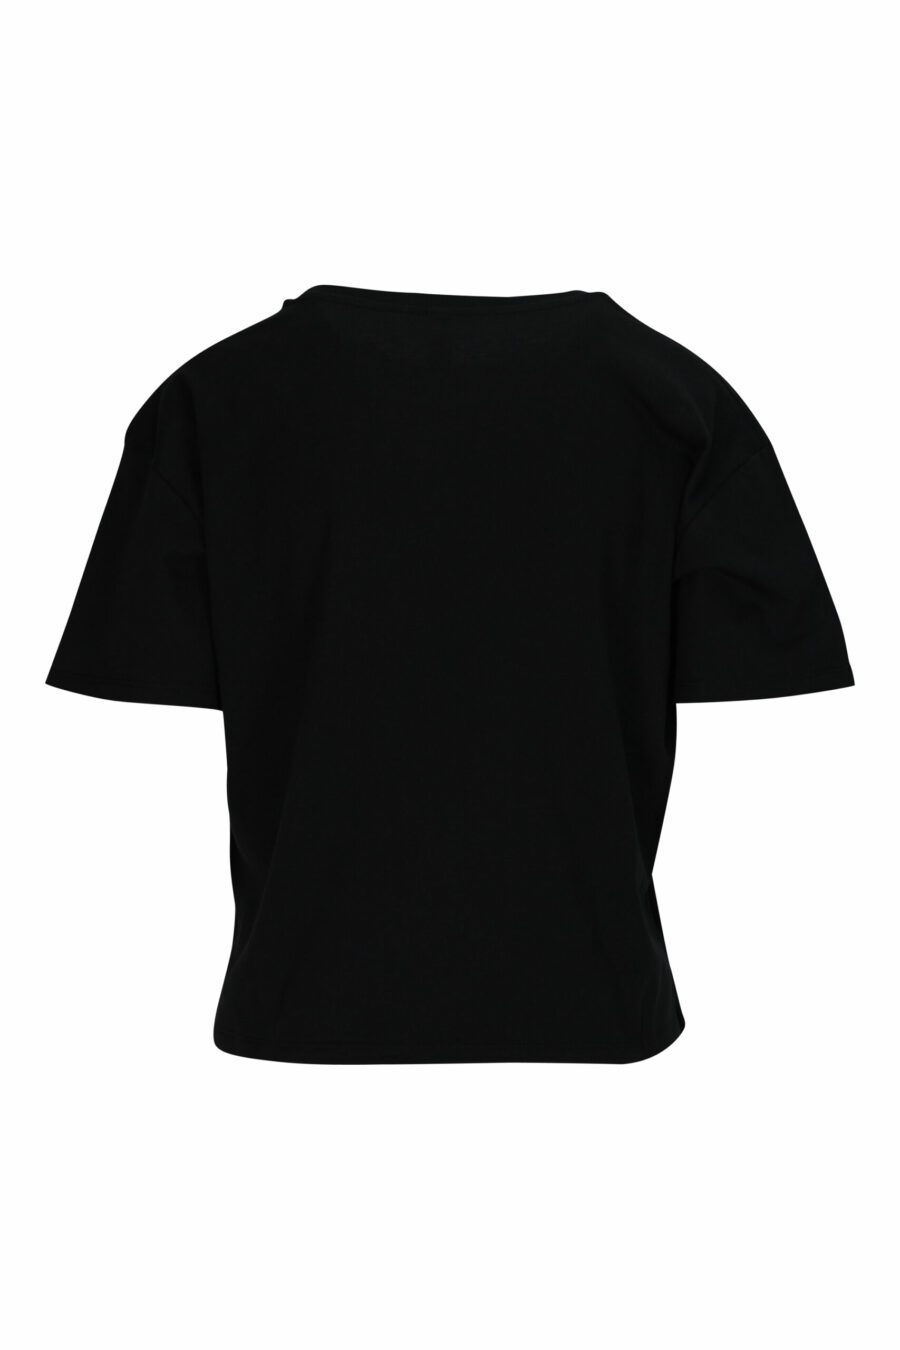 Camiseta negra "oversize" con minilogo multicolor - 667113355894 1 scaled